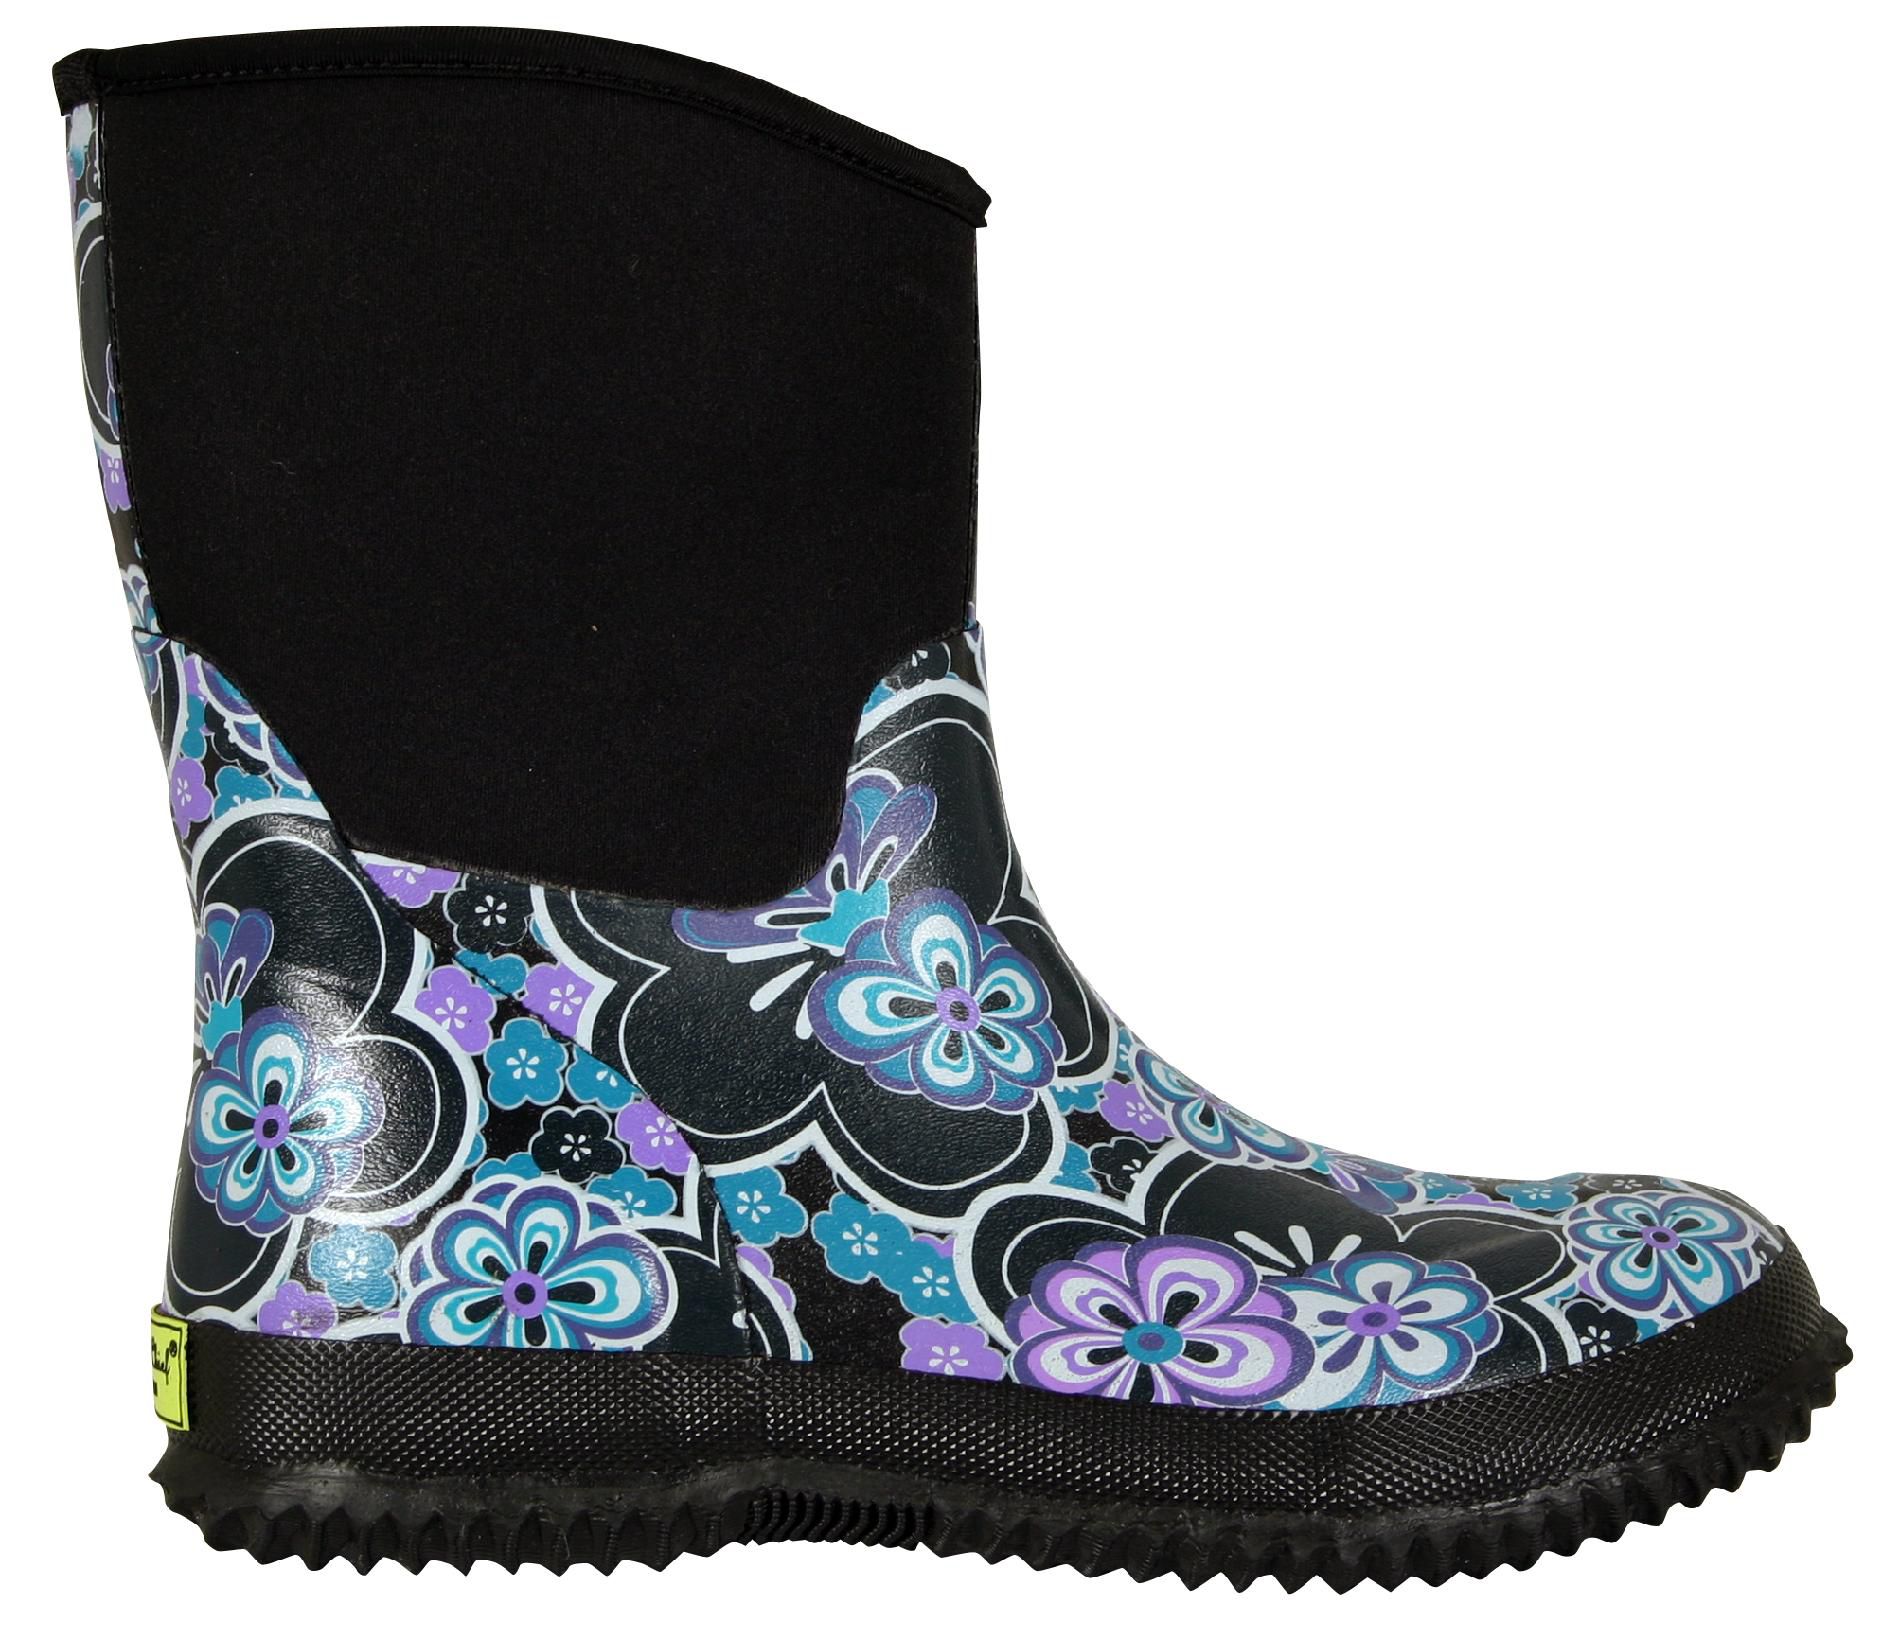 Western Chief Women's Neoprene Boot Floral Breezy - Blue